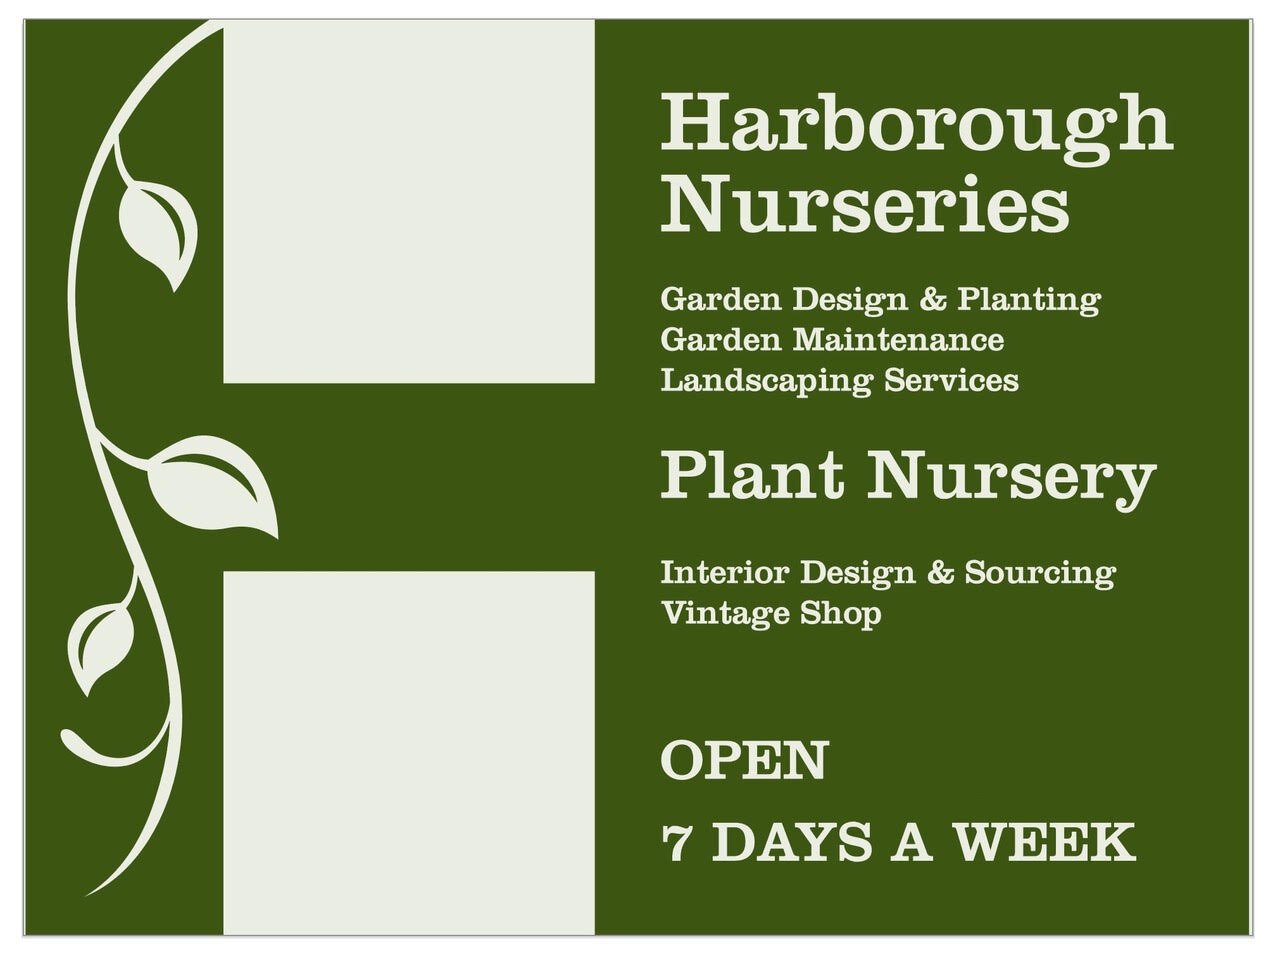  Harborough Nurseries